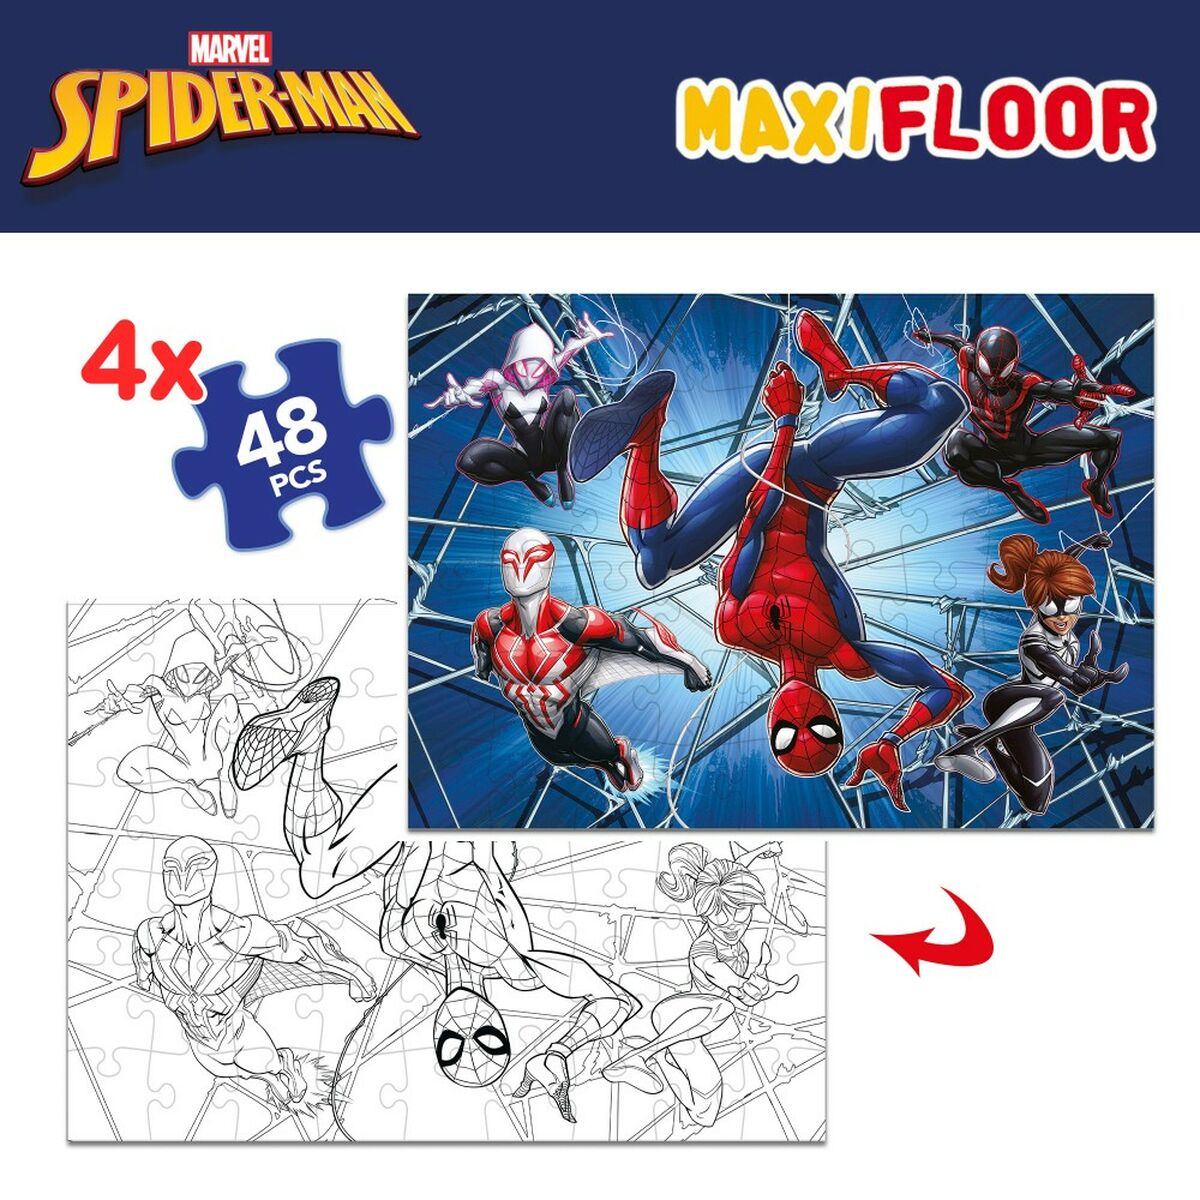 Barnpussel Spider-Man Dubbelsidig 4-i-1 48 Delar 35 x 1,5 x 25 cm (6 antal)-Leksaker och spel, Pussel och hjärngrupper-Spider-Man-peaceofhome.se